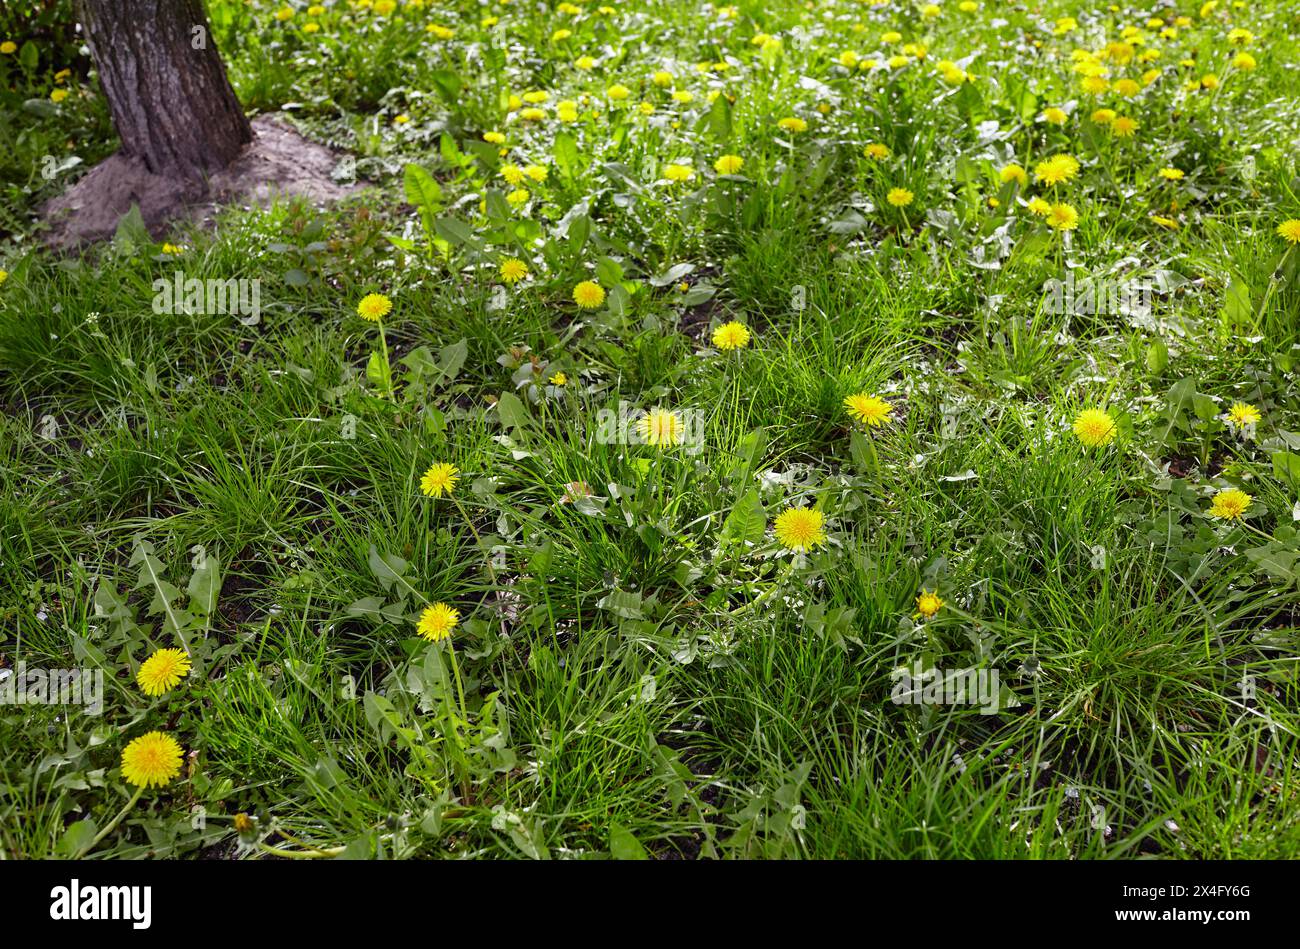 Pré vert avec des pissenlits jaunes au printemps. Gros plan de fleurs de printemps jaunes sur le sol Banque D'Images